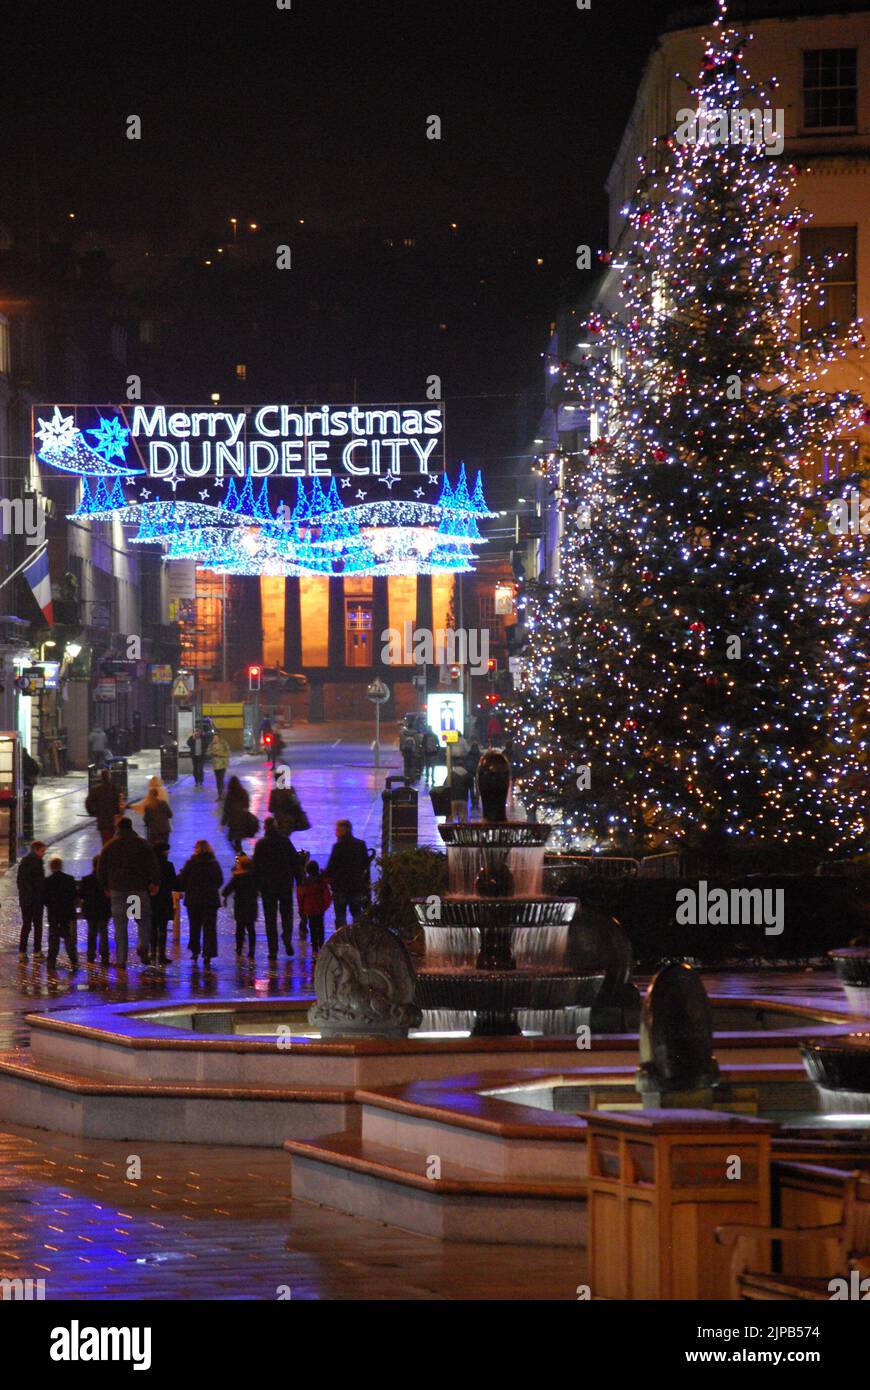 „Merry Christmas Dundee City“, nächtliche Straßenszene mit Weihnachtsbaum, Brunnen und Lichtern, während die Menschen die Reform Street entlang zur High School of Dundee gehen Stockfoto